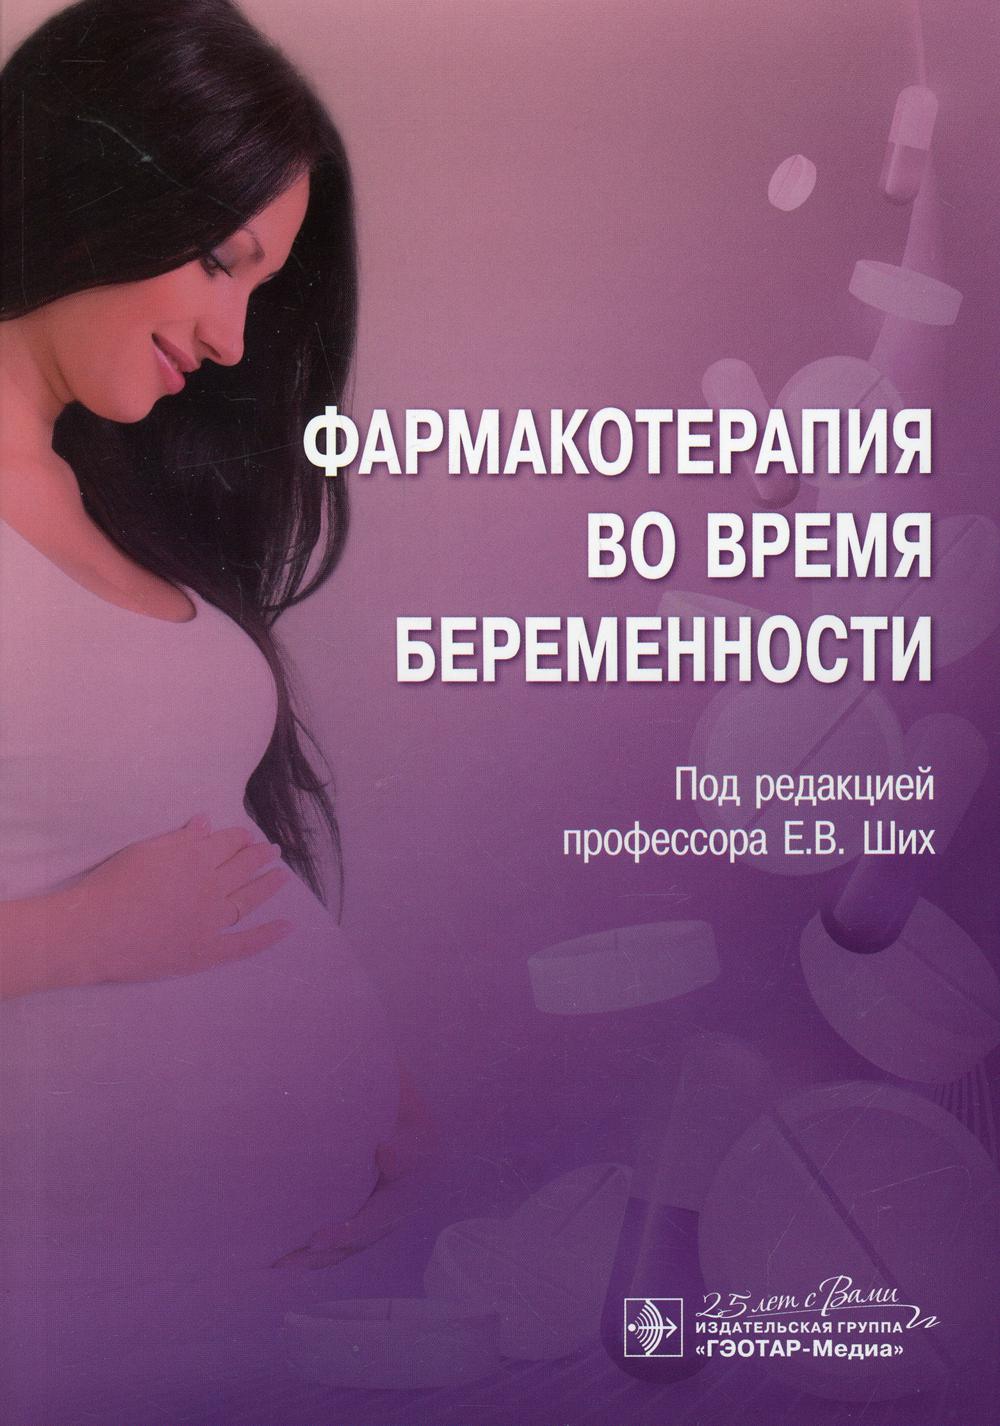 фото Книга фармакотерапия во время беременности гэотар-медиа